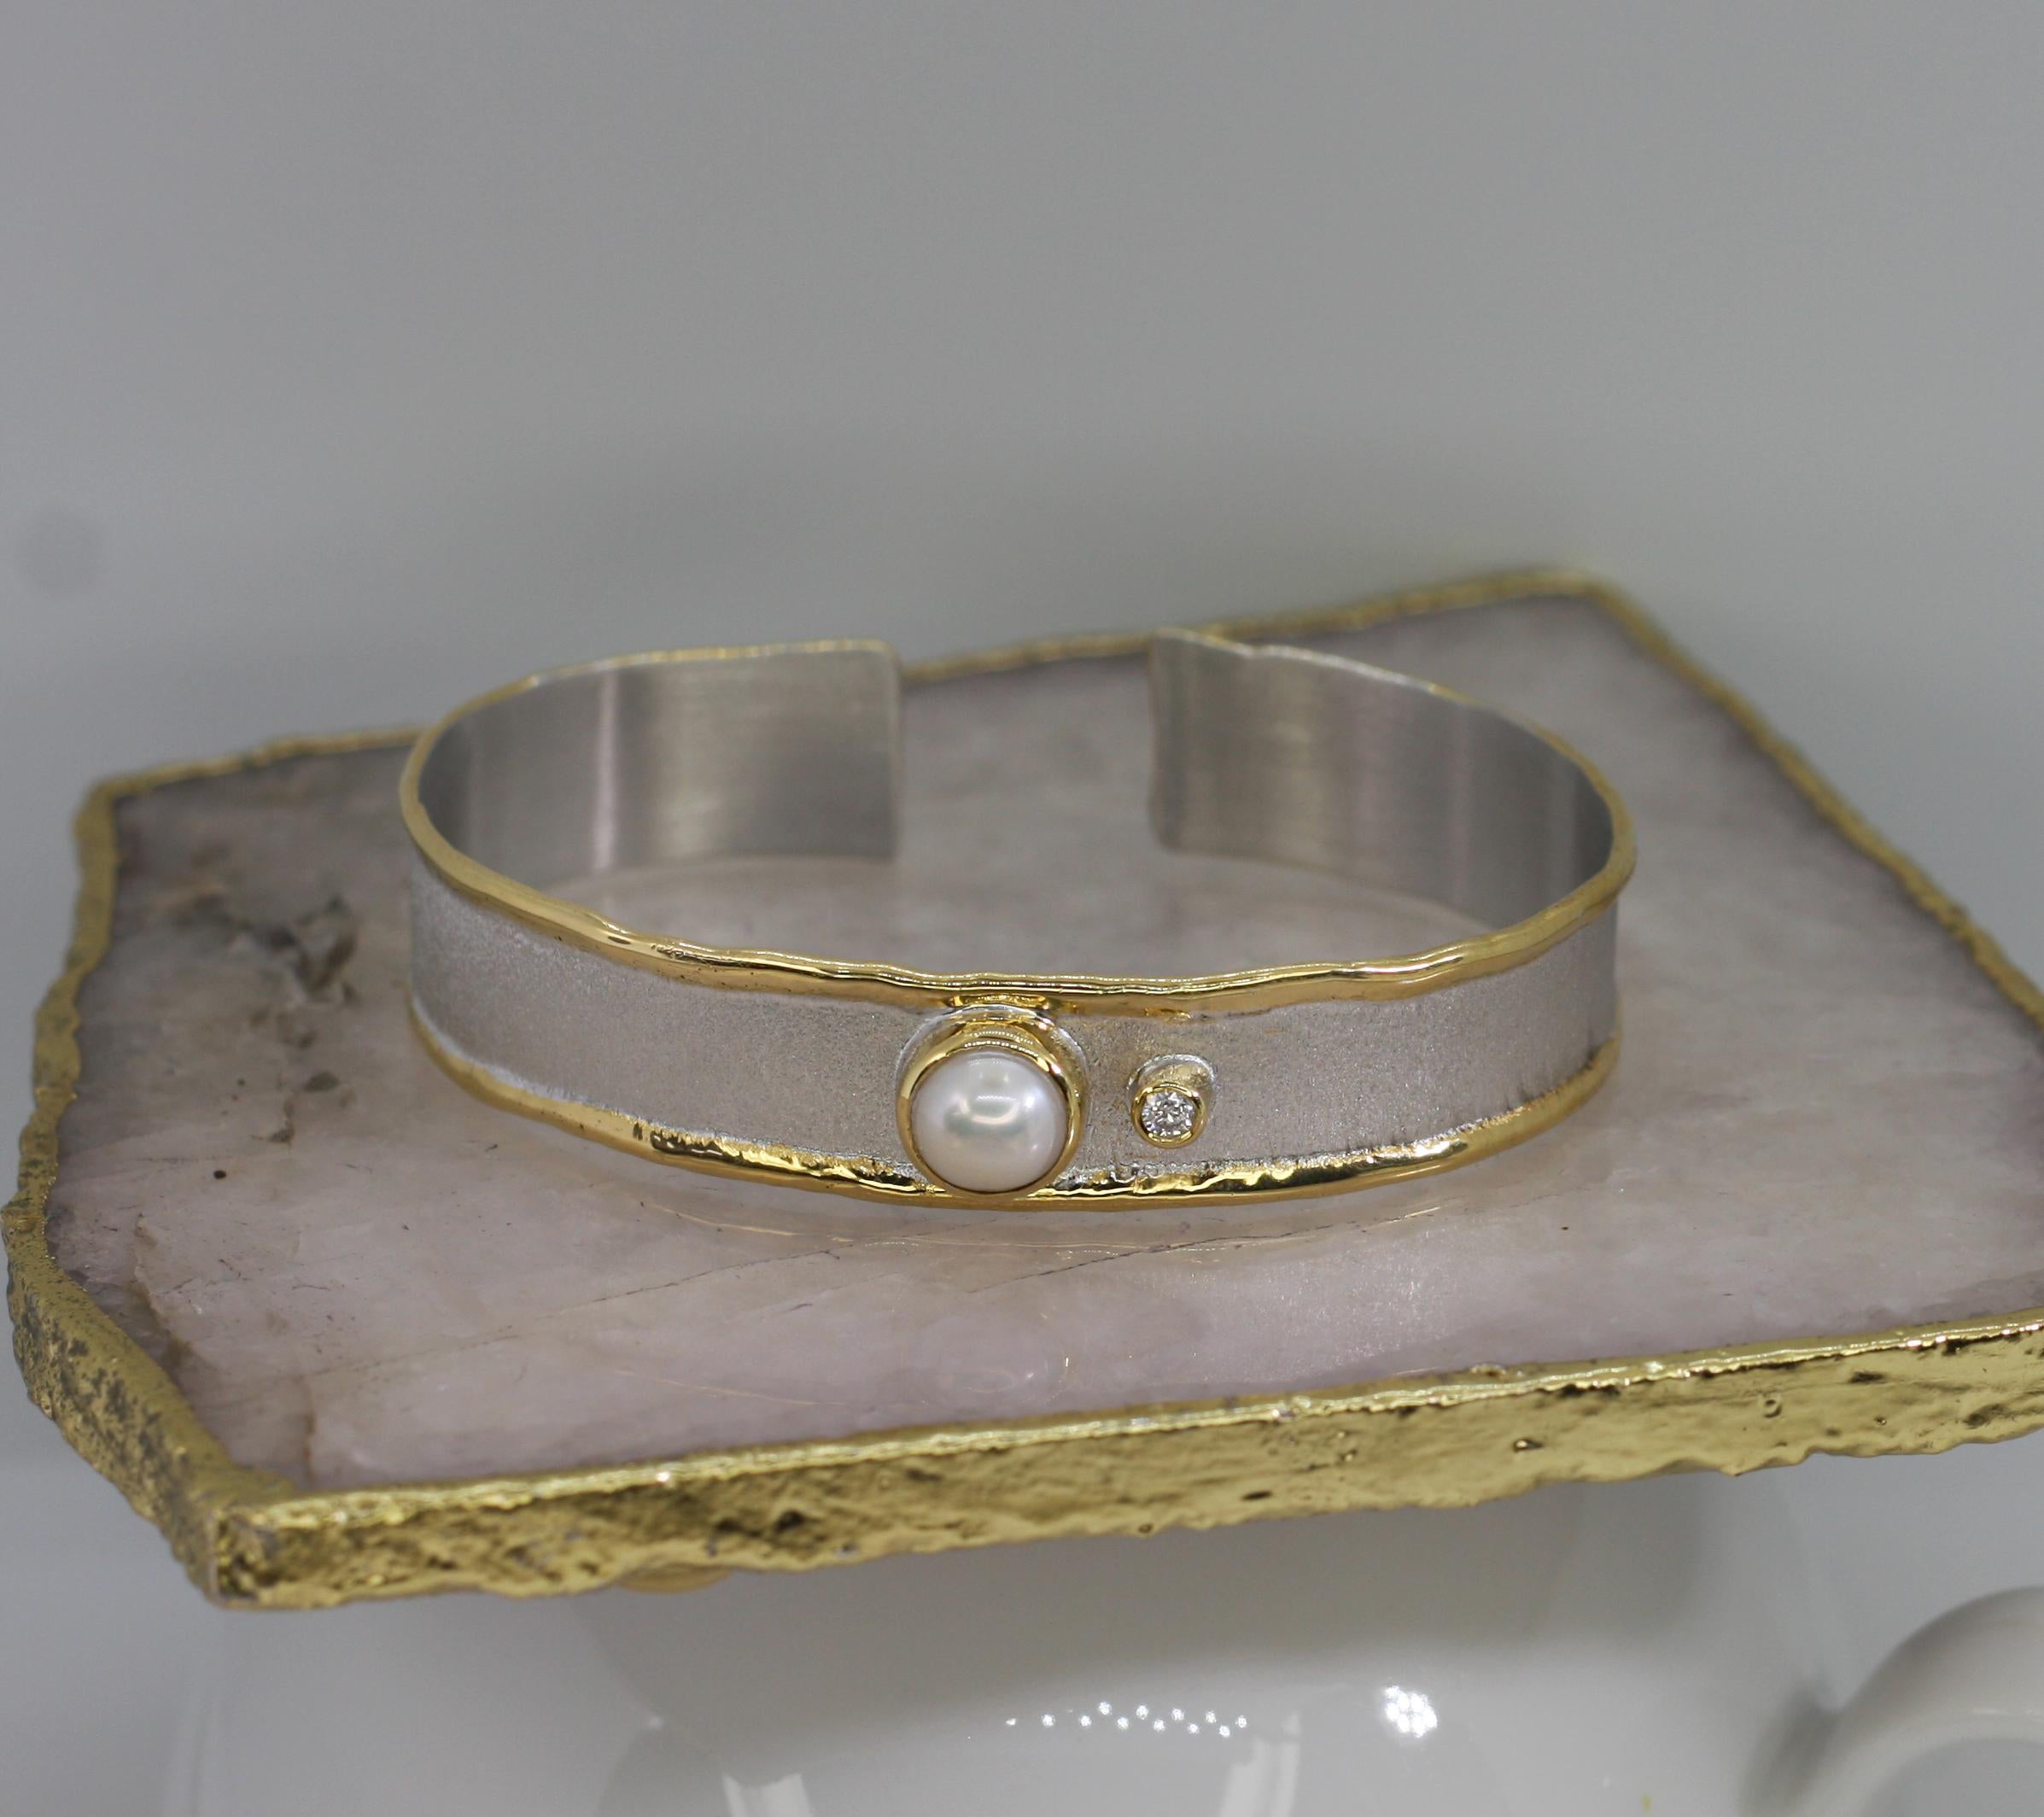 Yianni Creations Manschettenarmband von Midas Collection, handgefertigt aus reinem 950er Silber und mit Palladium beschichtet, um den Elementen zu widerstehen. Dieses wunderschöne, handgefertigte Armband besteht aus einer natürlichen Perle und einem